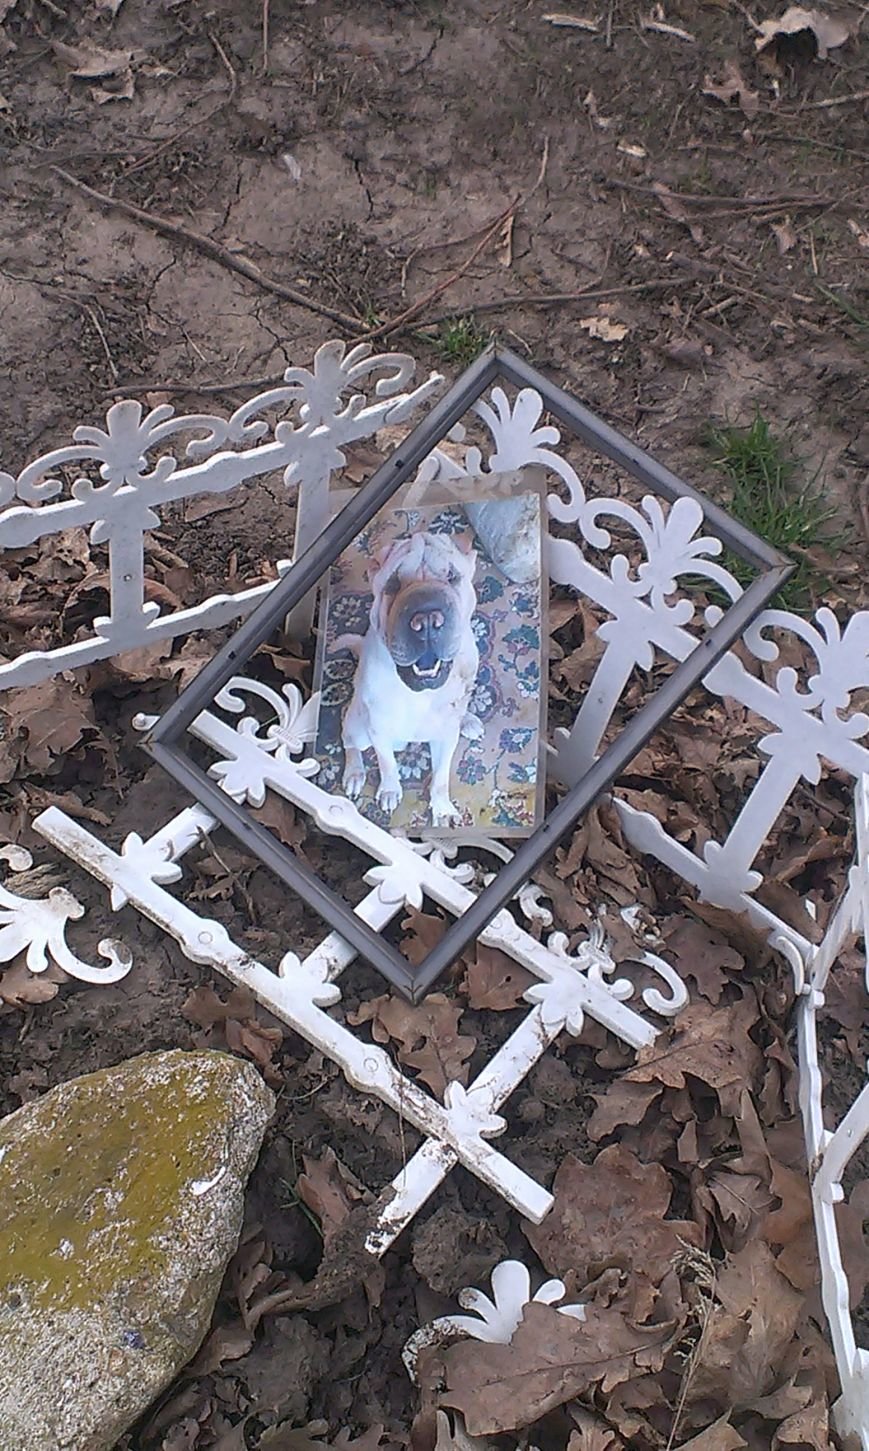 На Мемориале героической обороны Одессы собачники устроили кладбище домашних животных (ФОТО) (фото) - фото 1